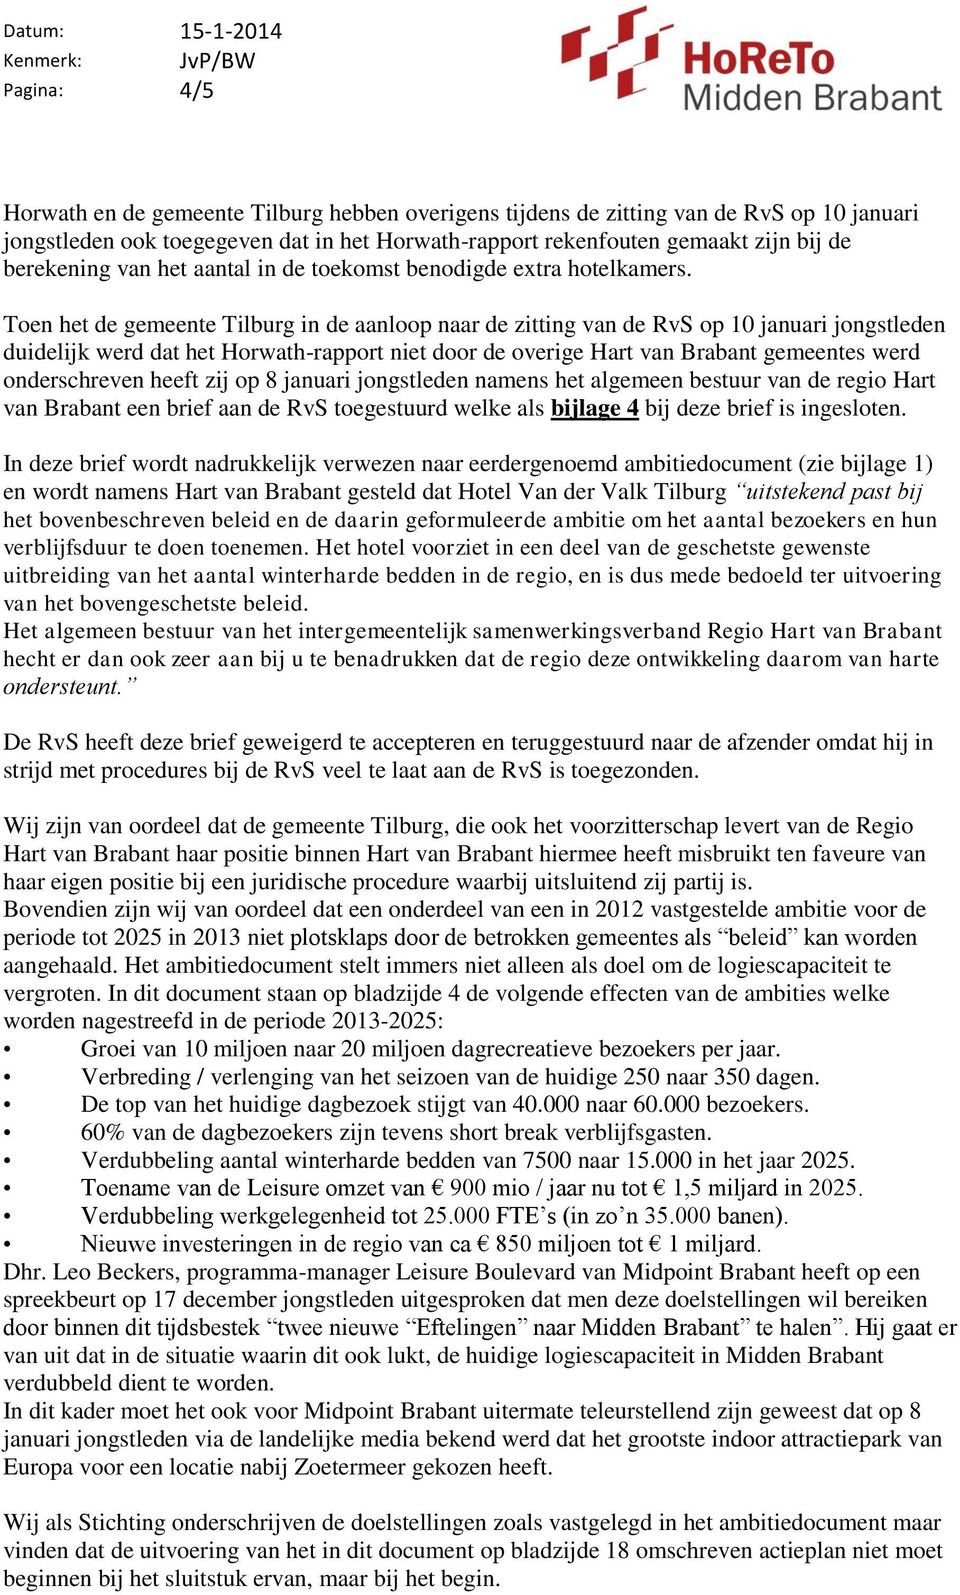 Toen het de gemeente Tilburg in de aanloop naar de zitting van de RvS op 10 januari jongstleden duidelijk werd dat het Horwath-rapport niet door de overige Hart van Brabant gemeentes werd